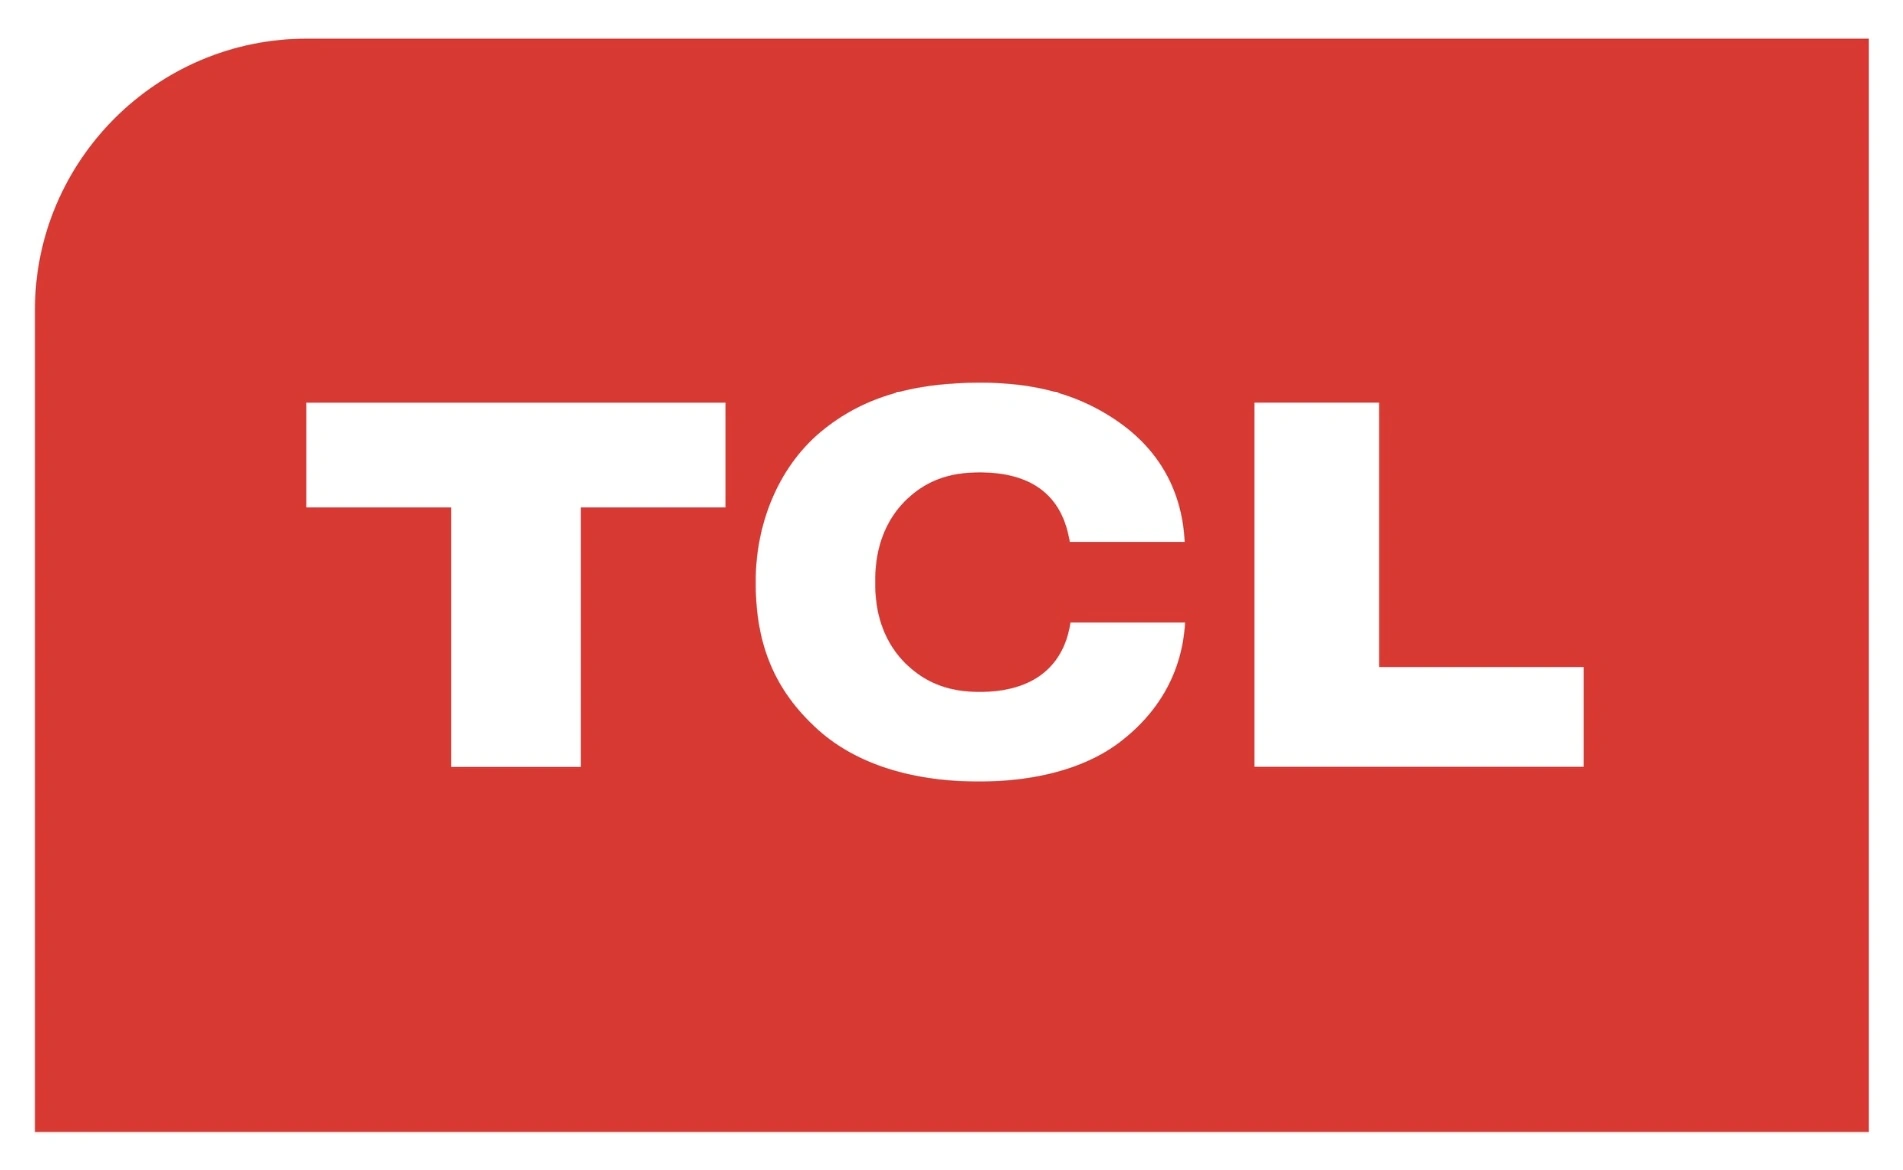 TCL Turkmenistan